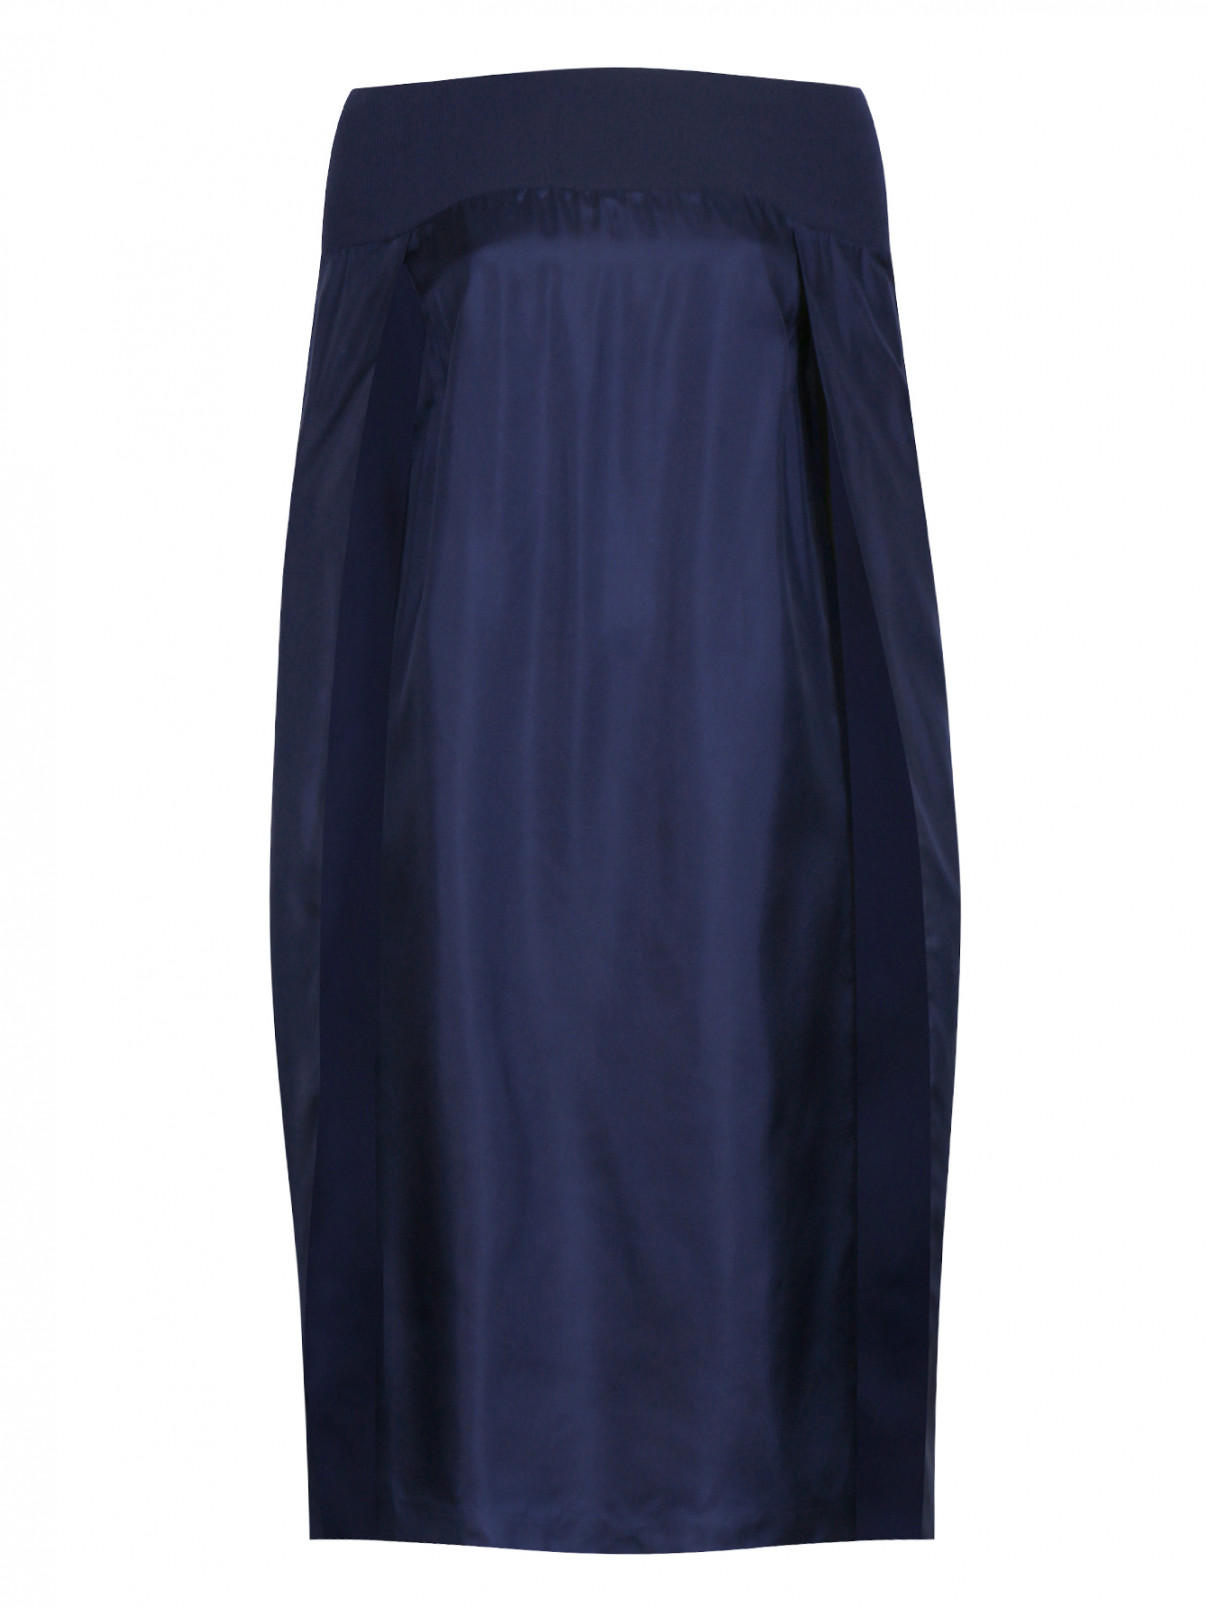 Платье свободного фасона из шелка на резинке Veronique Branquinho  –  Общий вид  – Цвет:  Синий